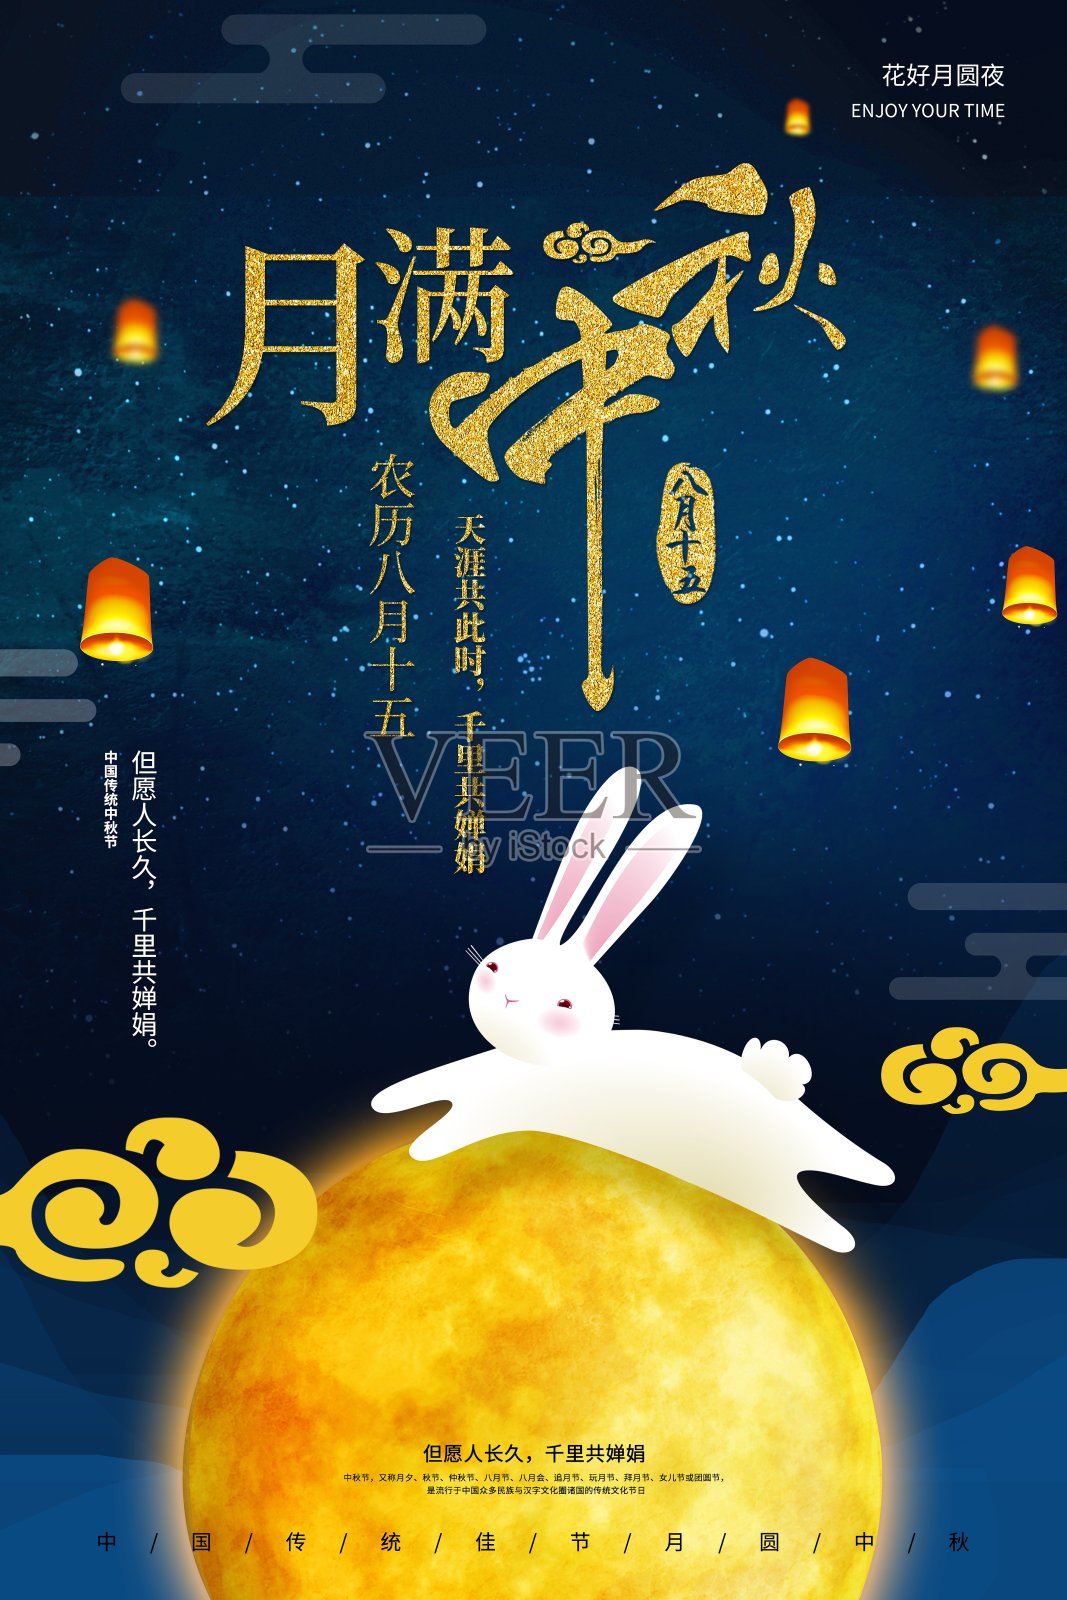 中国风月满中秋传统节日海报设计模板素材